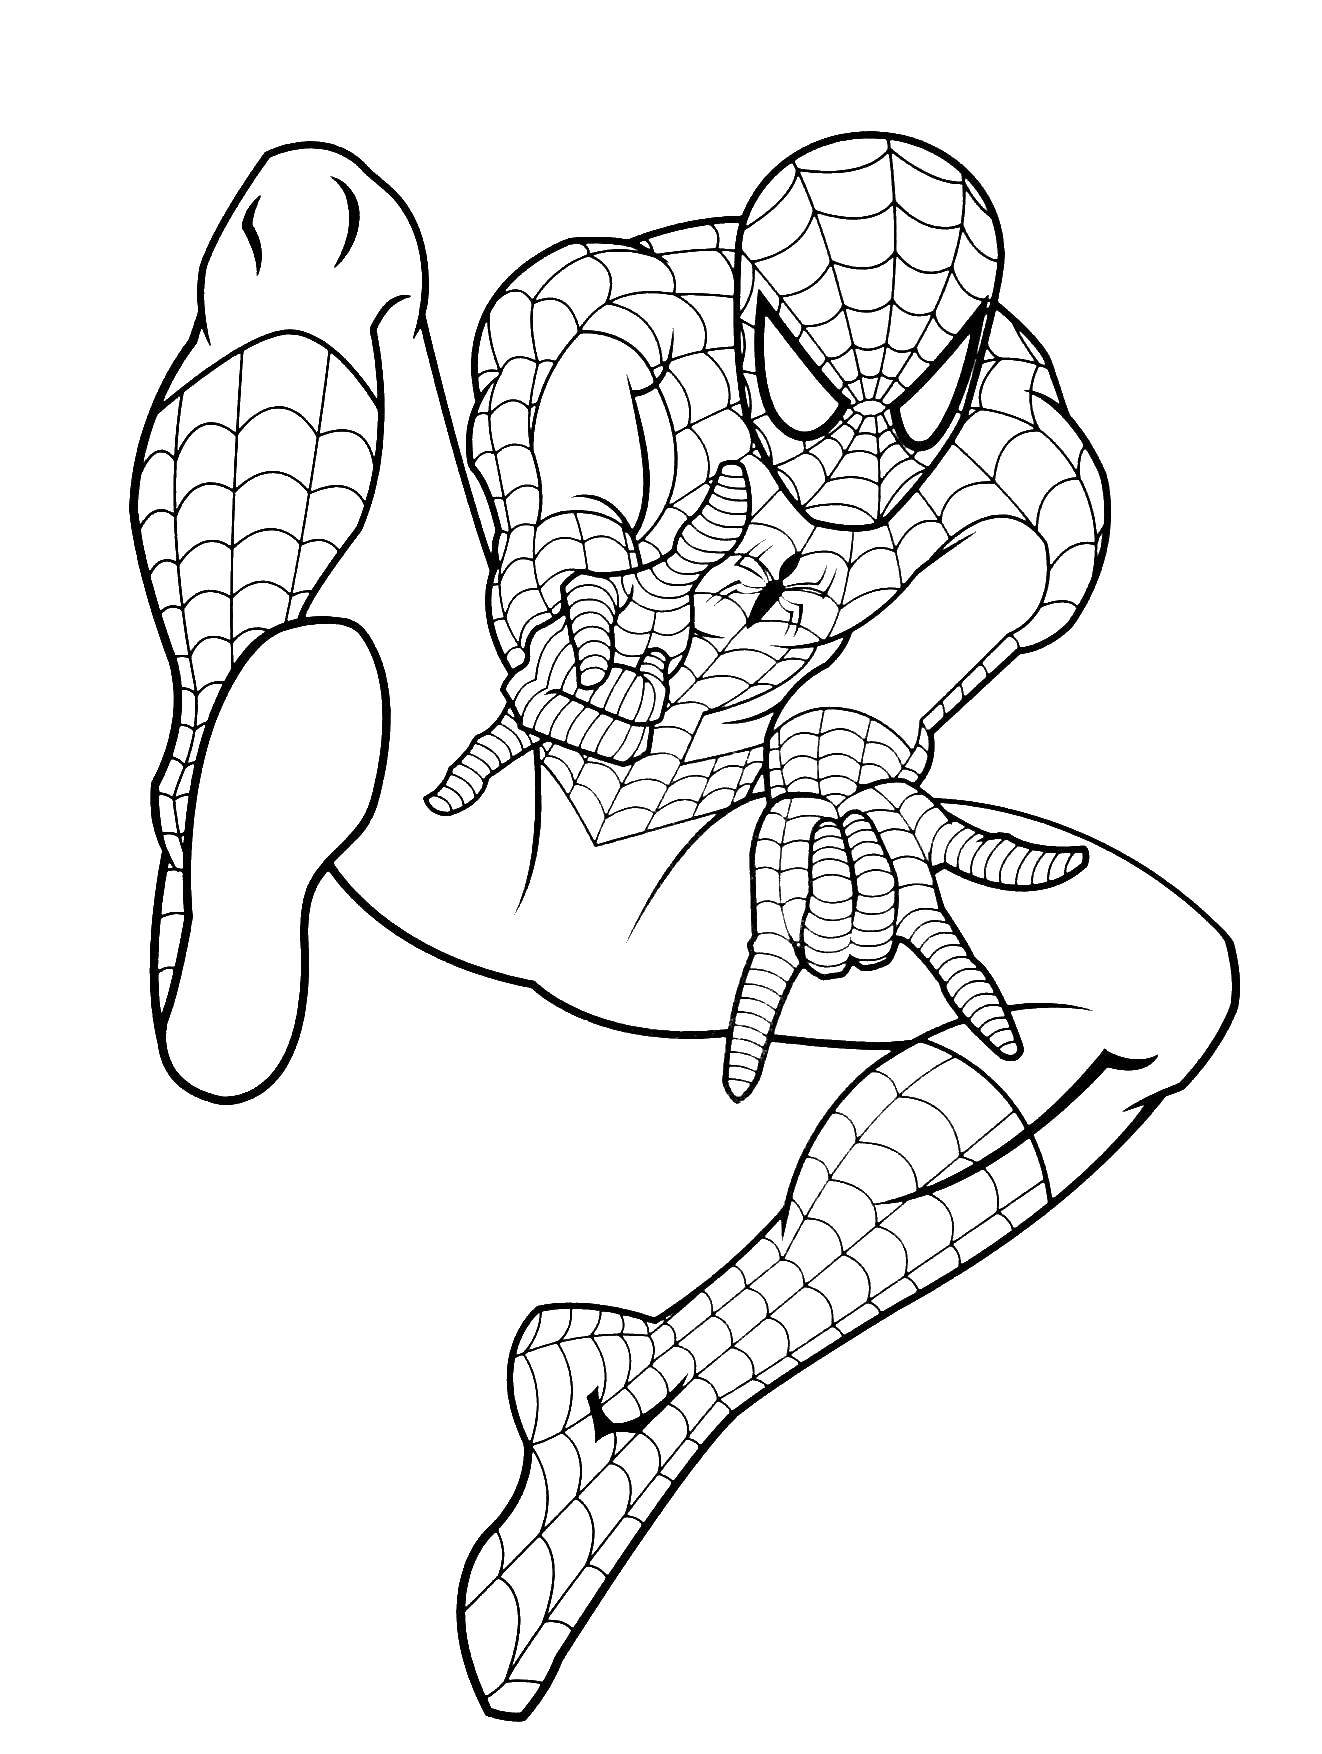 Название: Раскраска Человек паук. Категория: человек паук. Теги: человек паук, супергерой.